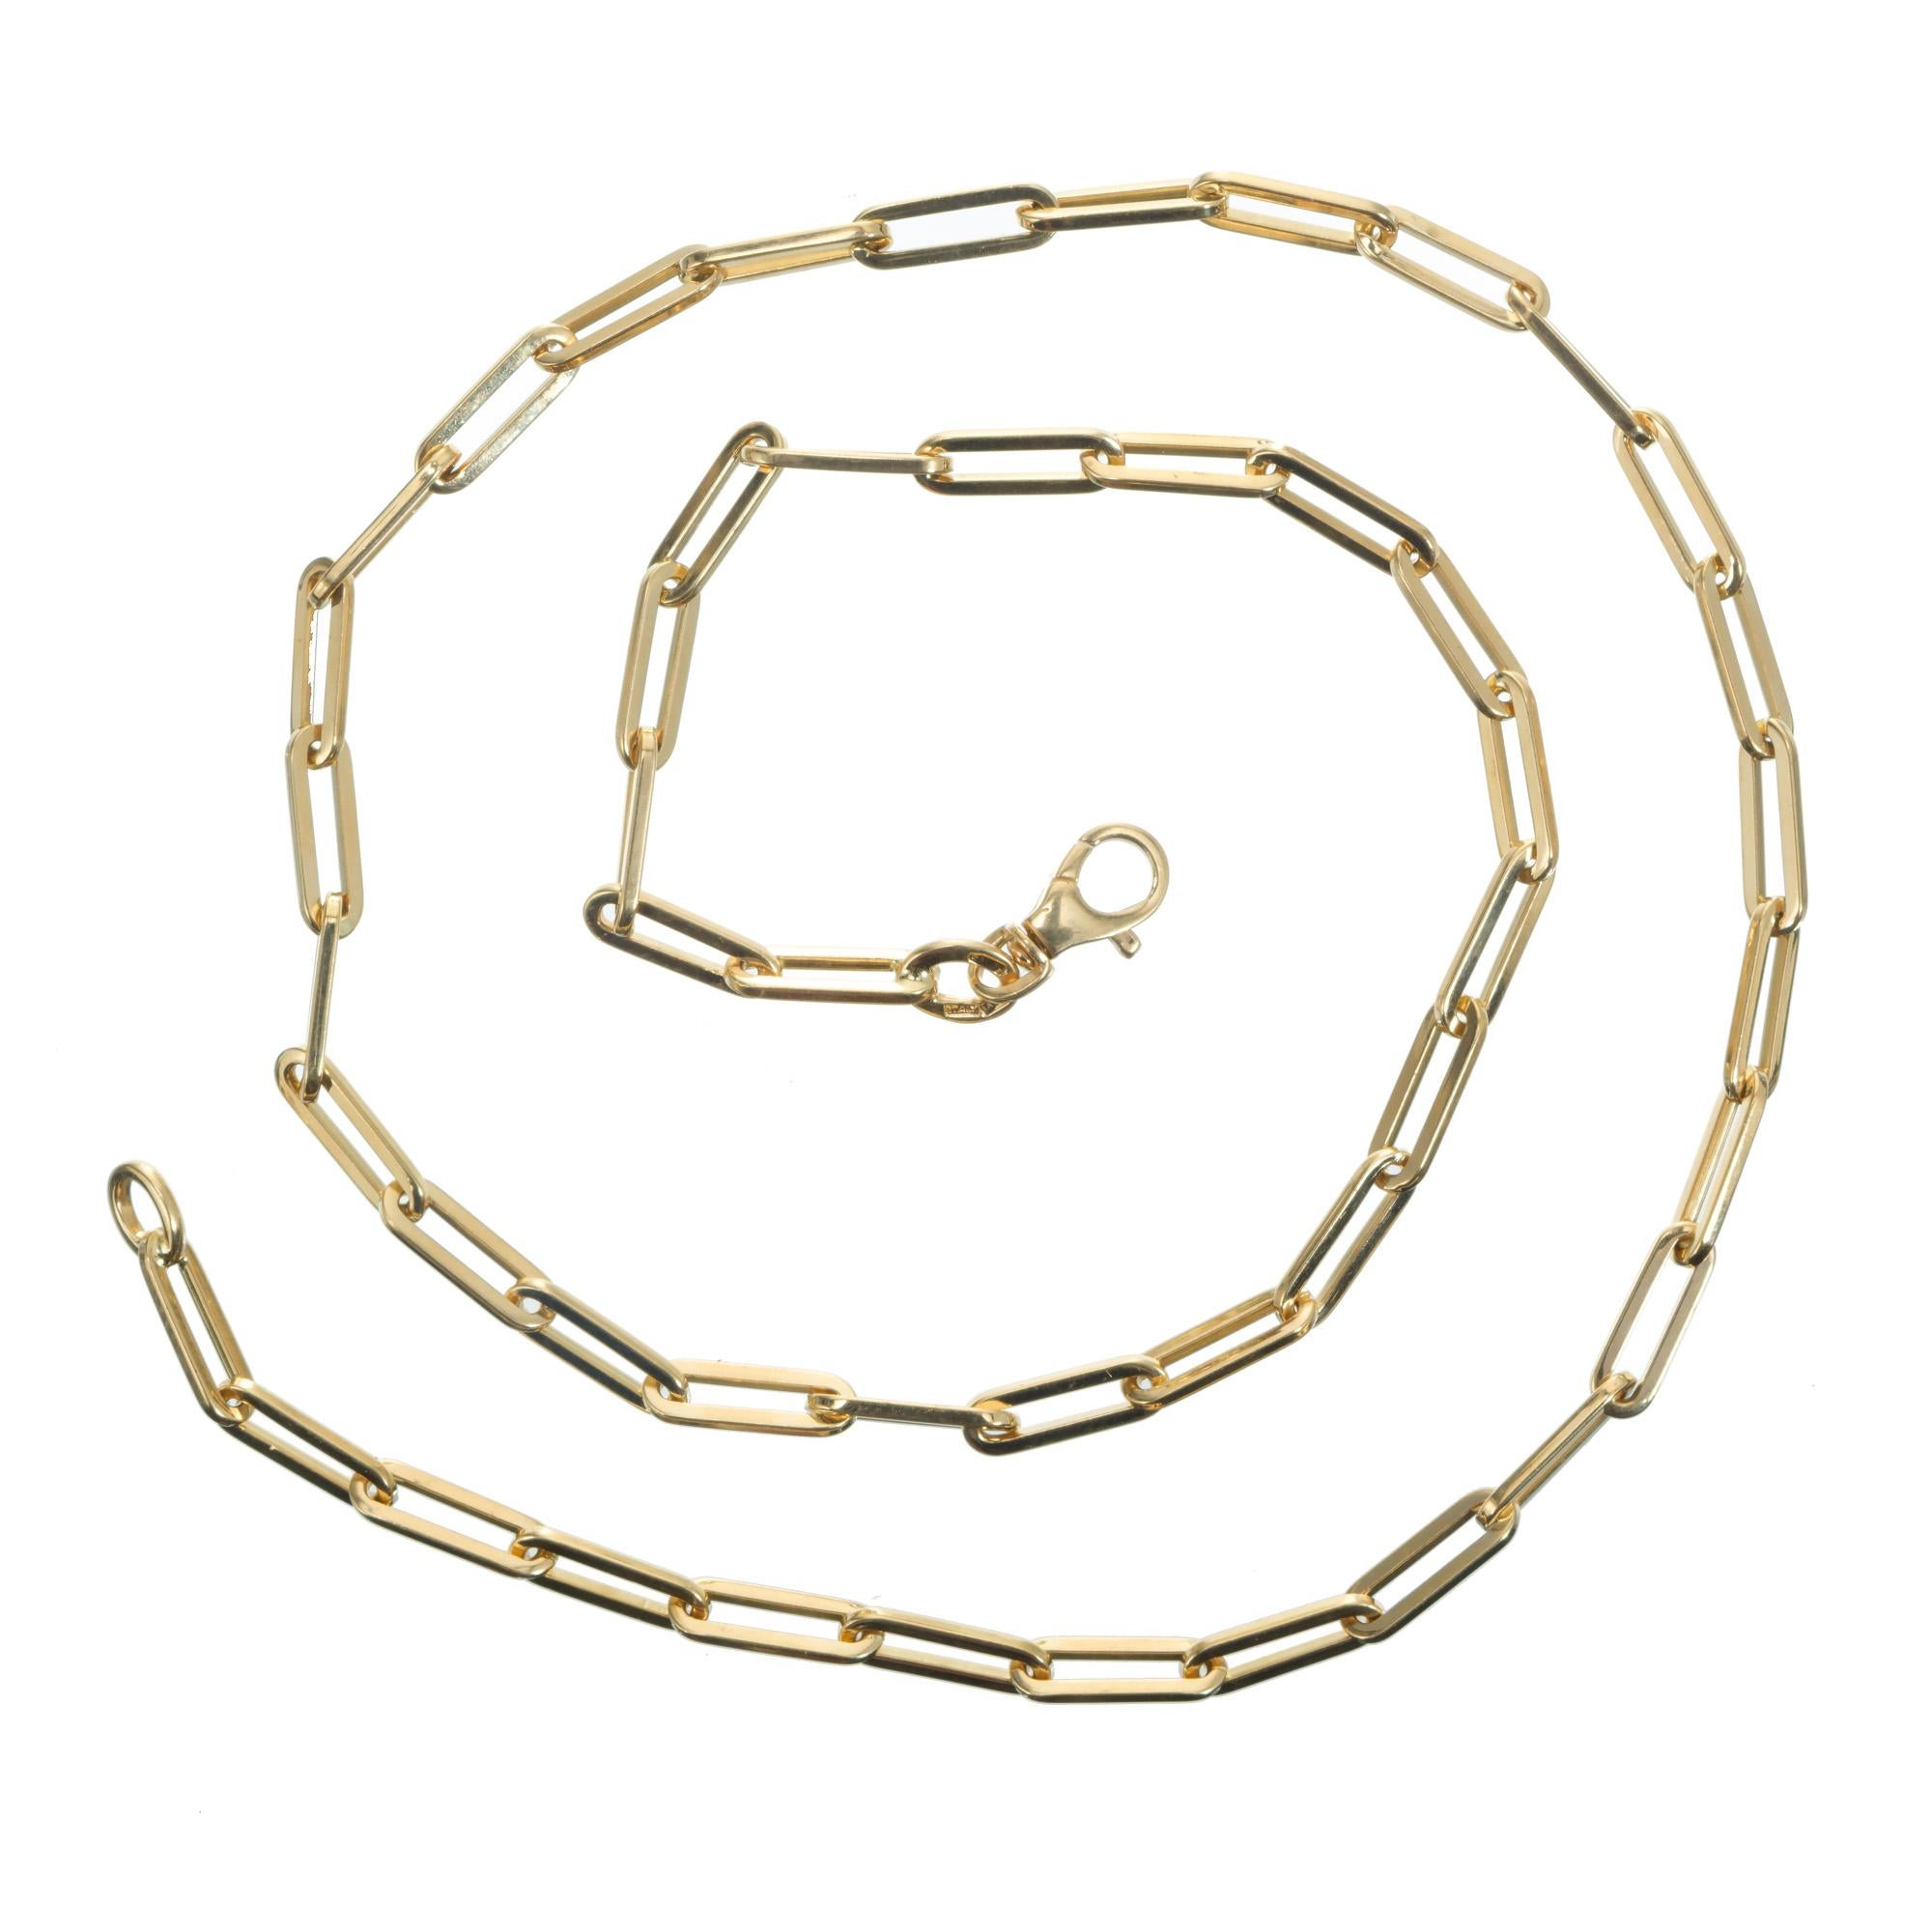 paper clip necklace